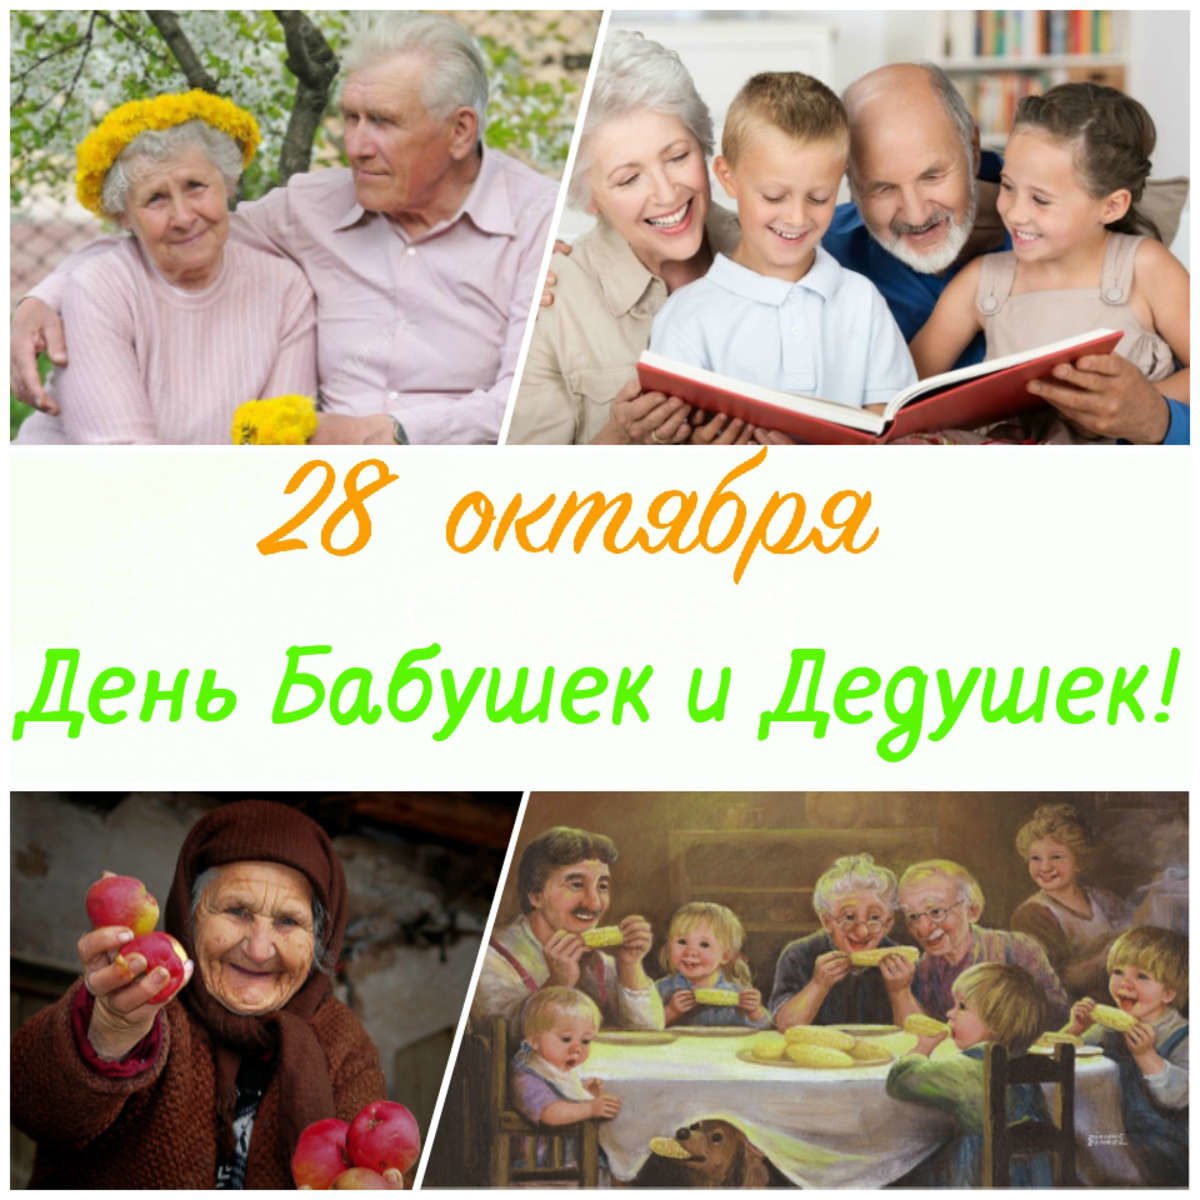 День бабушек мероприятие. День бабушек и дедушек в России. С днём бабушек и дедушек. С днём бабушек и дедушек открытки. 28 Октября – день бабушек и дедуше.